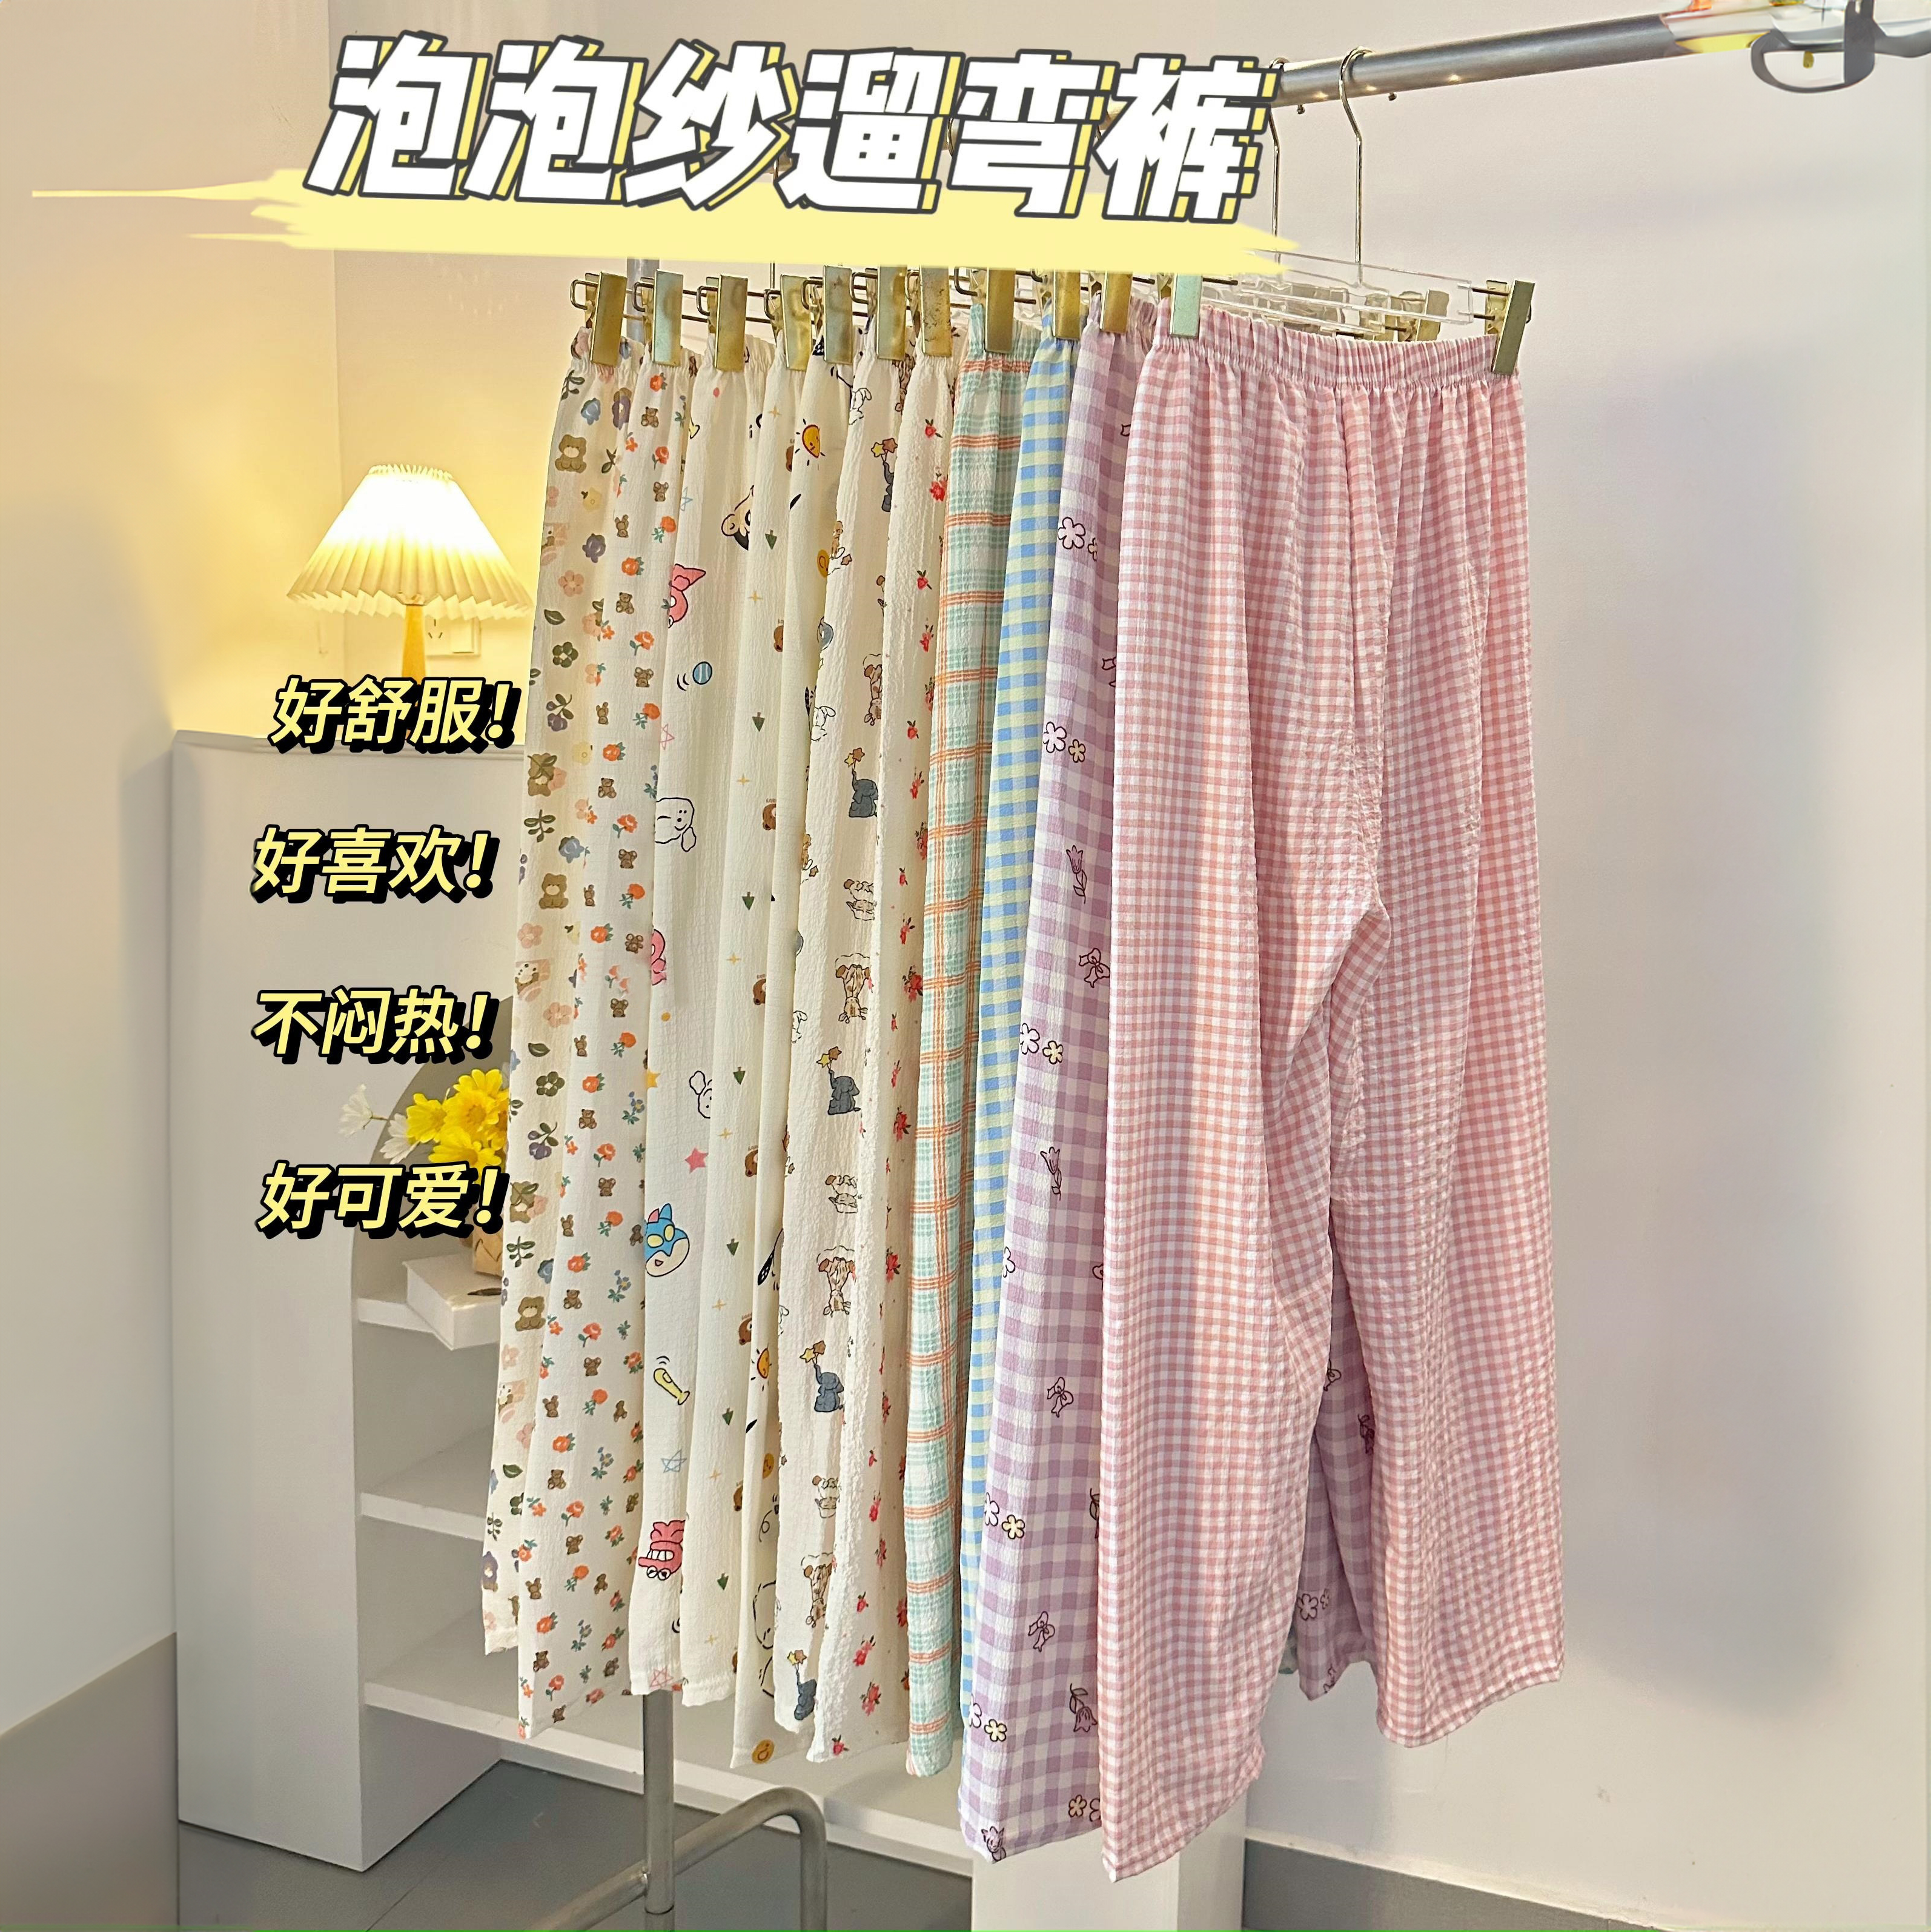 【买一送一】韩单ENXIAMNE泡泡纱遛弯裤  任选2件 12款可选